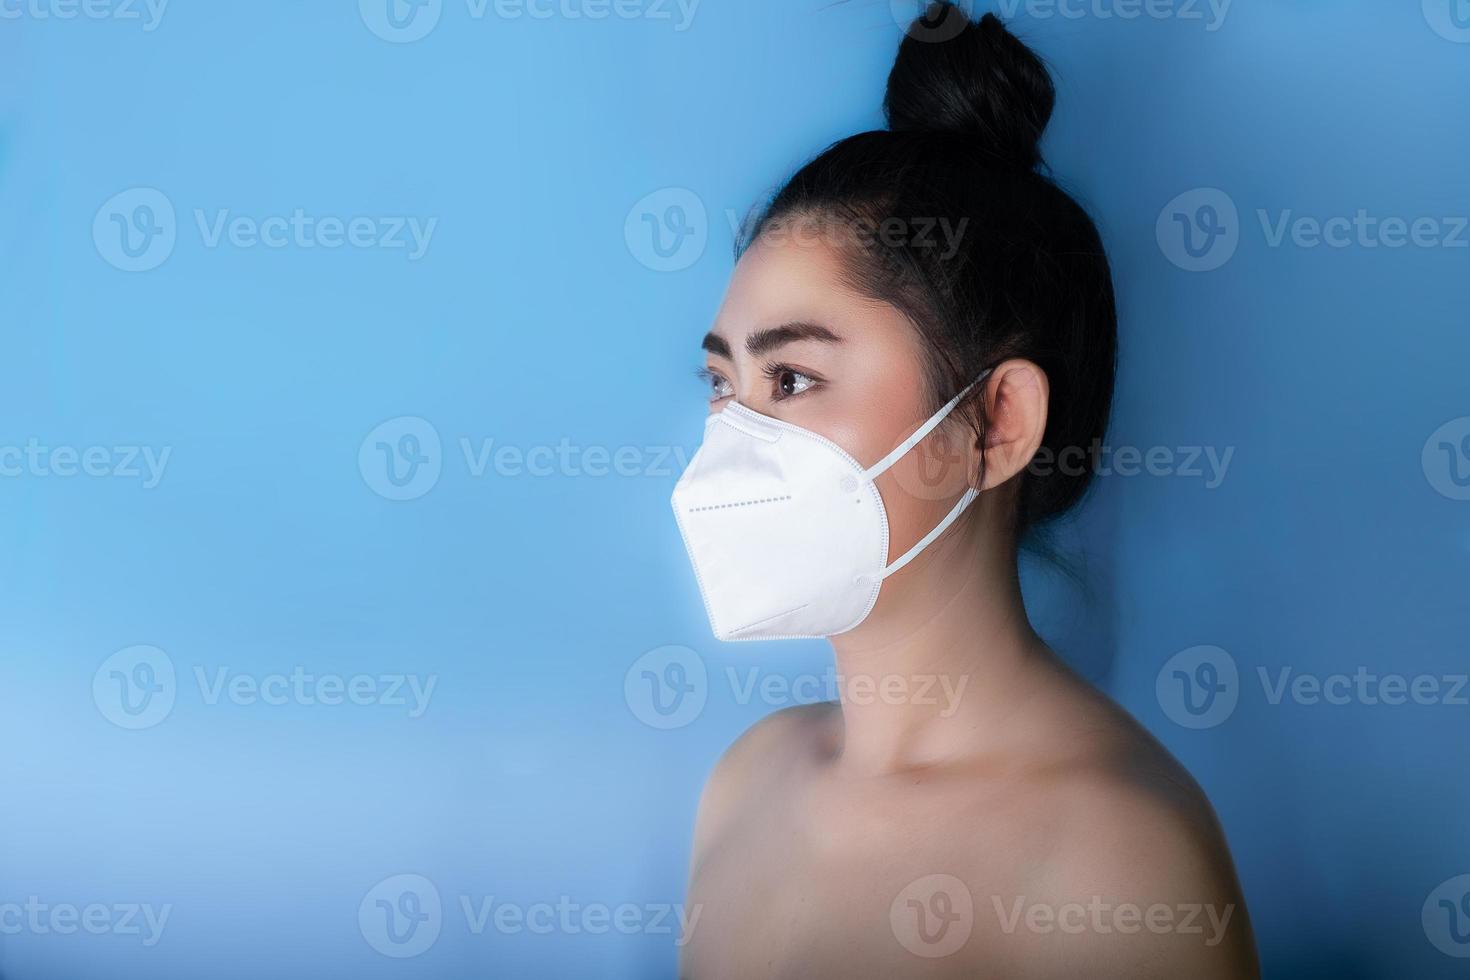 närbild av en kvinna som tar på sig en respirator n95-mask för att skydda mot luftburna luftvägssjukdomar som influensa covid-19 coronavirus ebola pm2.5 damm och smog foto